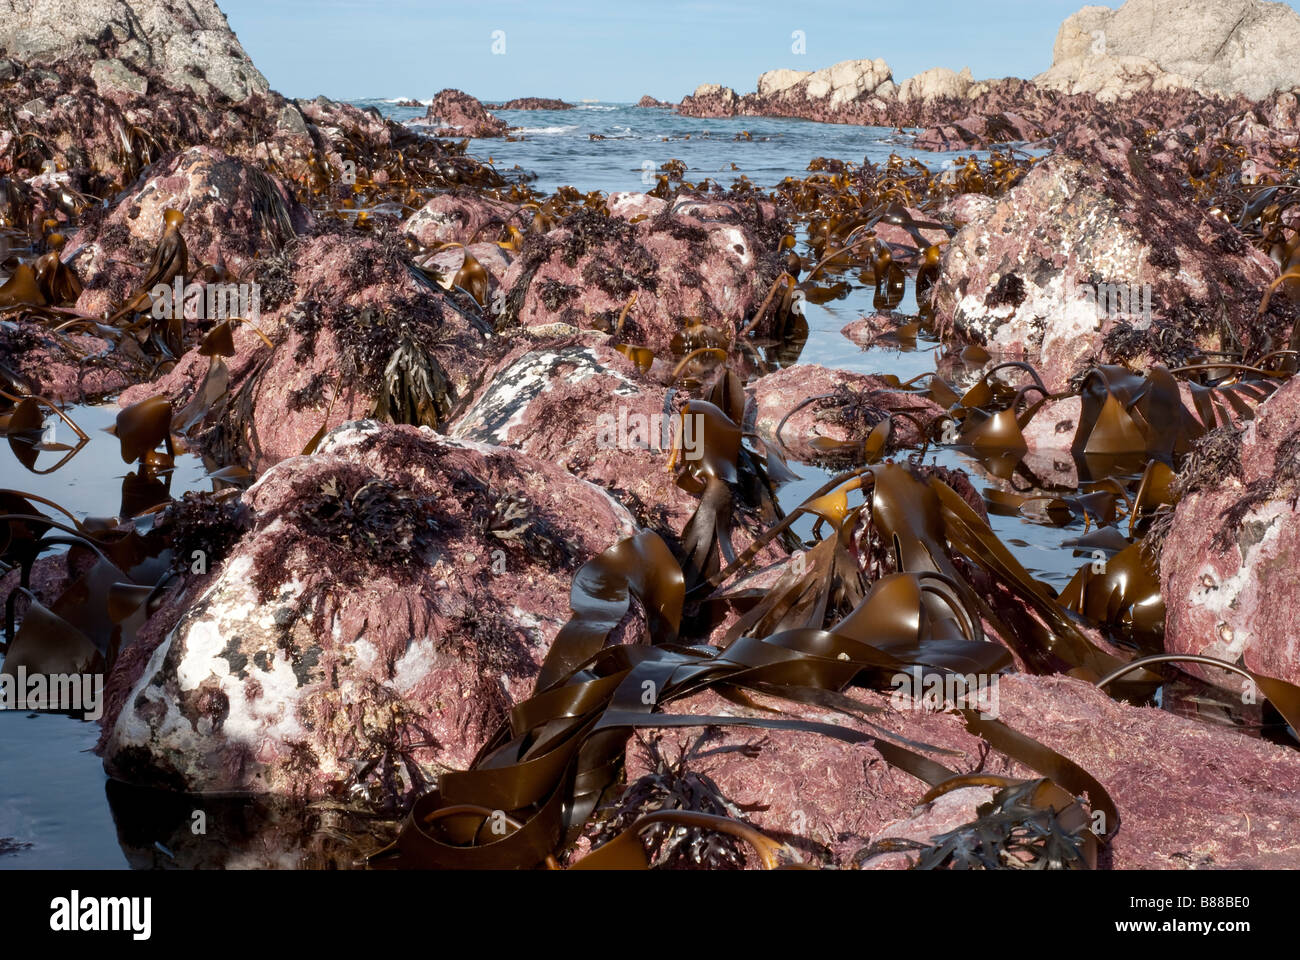 La sub zona litoral de orilla rocosa expuesta en un muelle de baja marea, mostrando un número de algas kelp incluida. Foto de stock